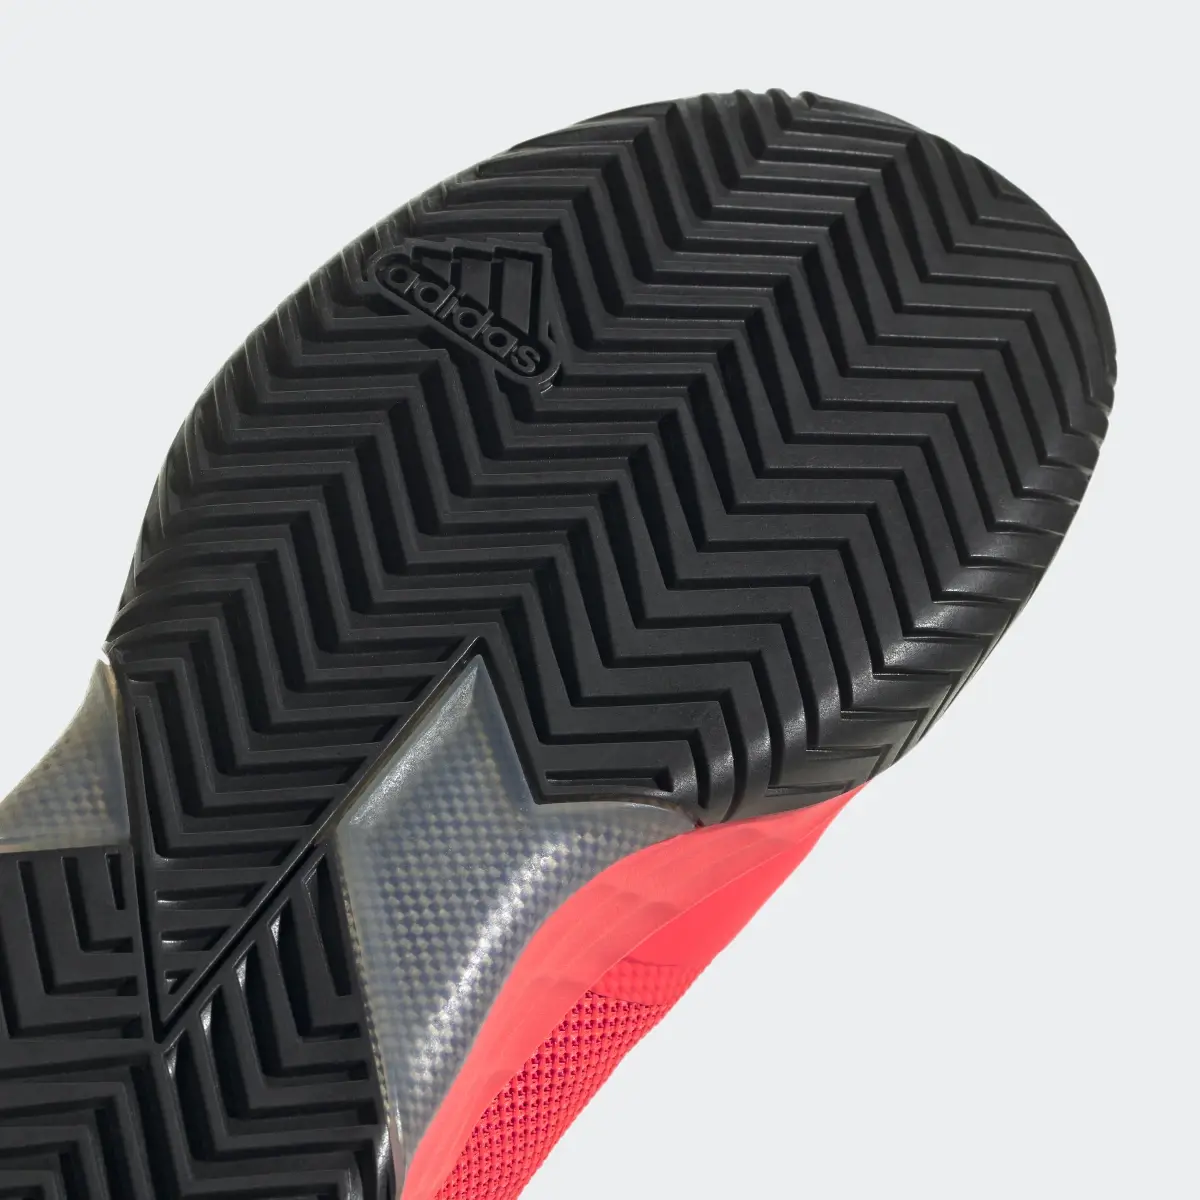 Adidas adizero Ubersonic 4 Tennis Shoes. 3